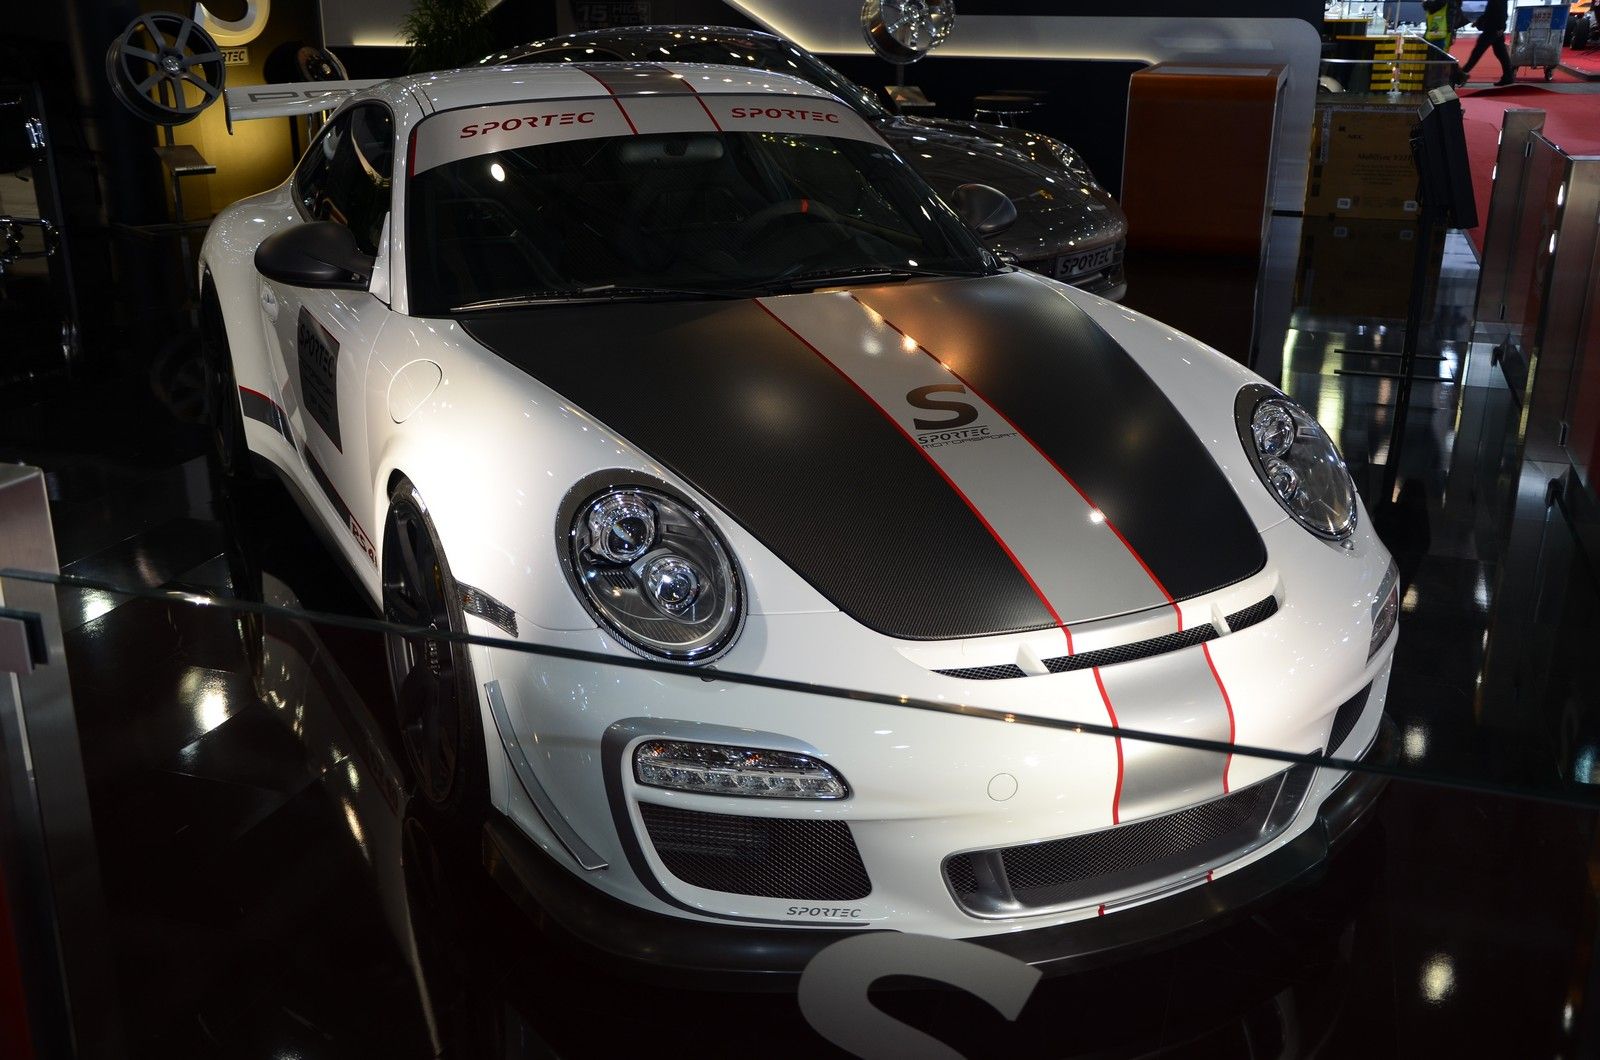 2012 Porsche 911 GT3 RS 4.0 SP 525 by Sportec